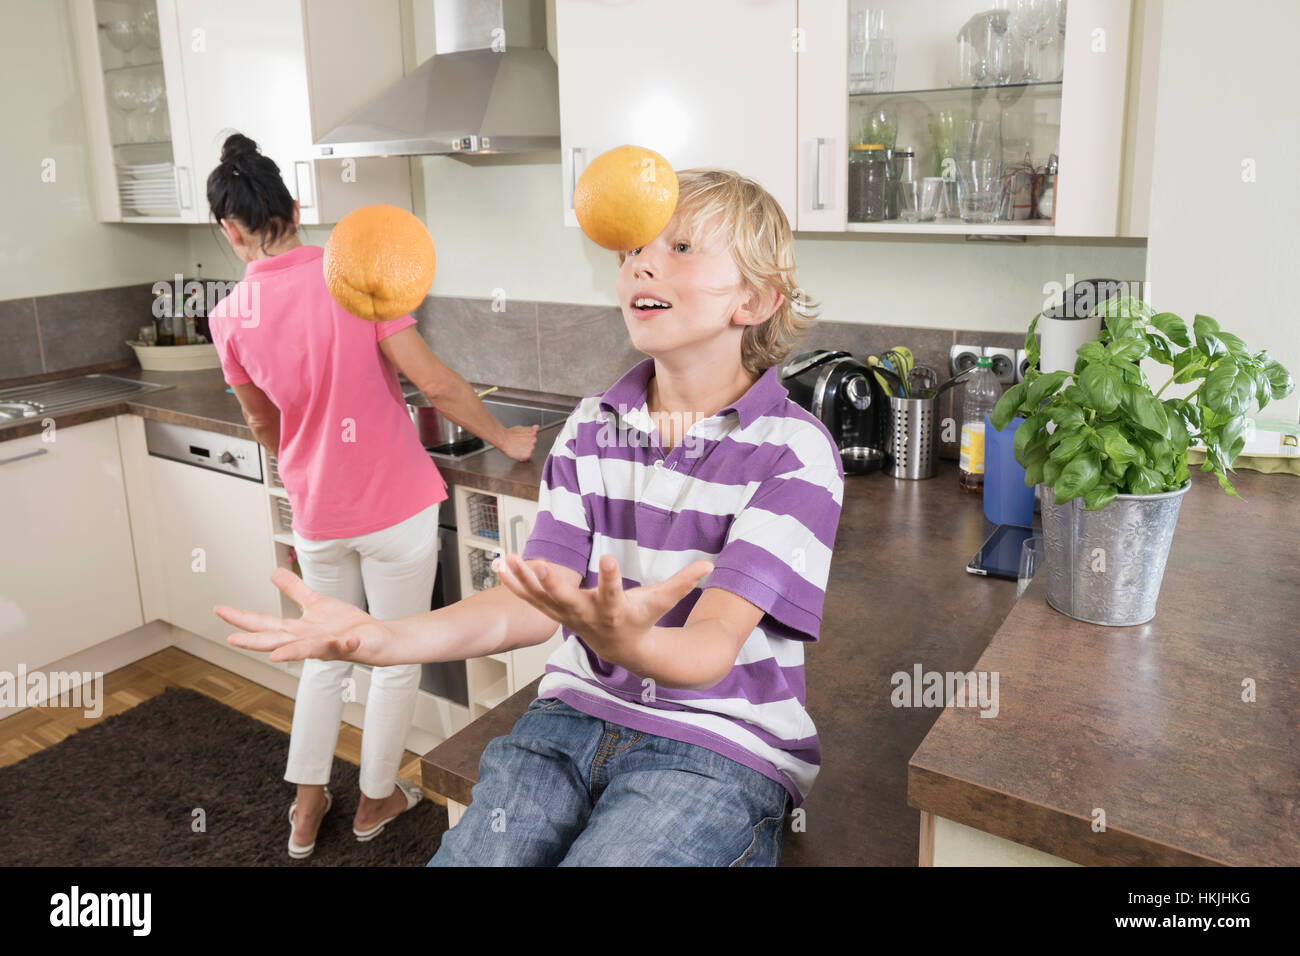 Junge Jonglieren mit Orangen während Mutter bereitet Essen, Bayern, Deutschland Stockfoto